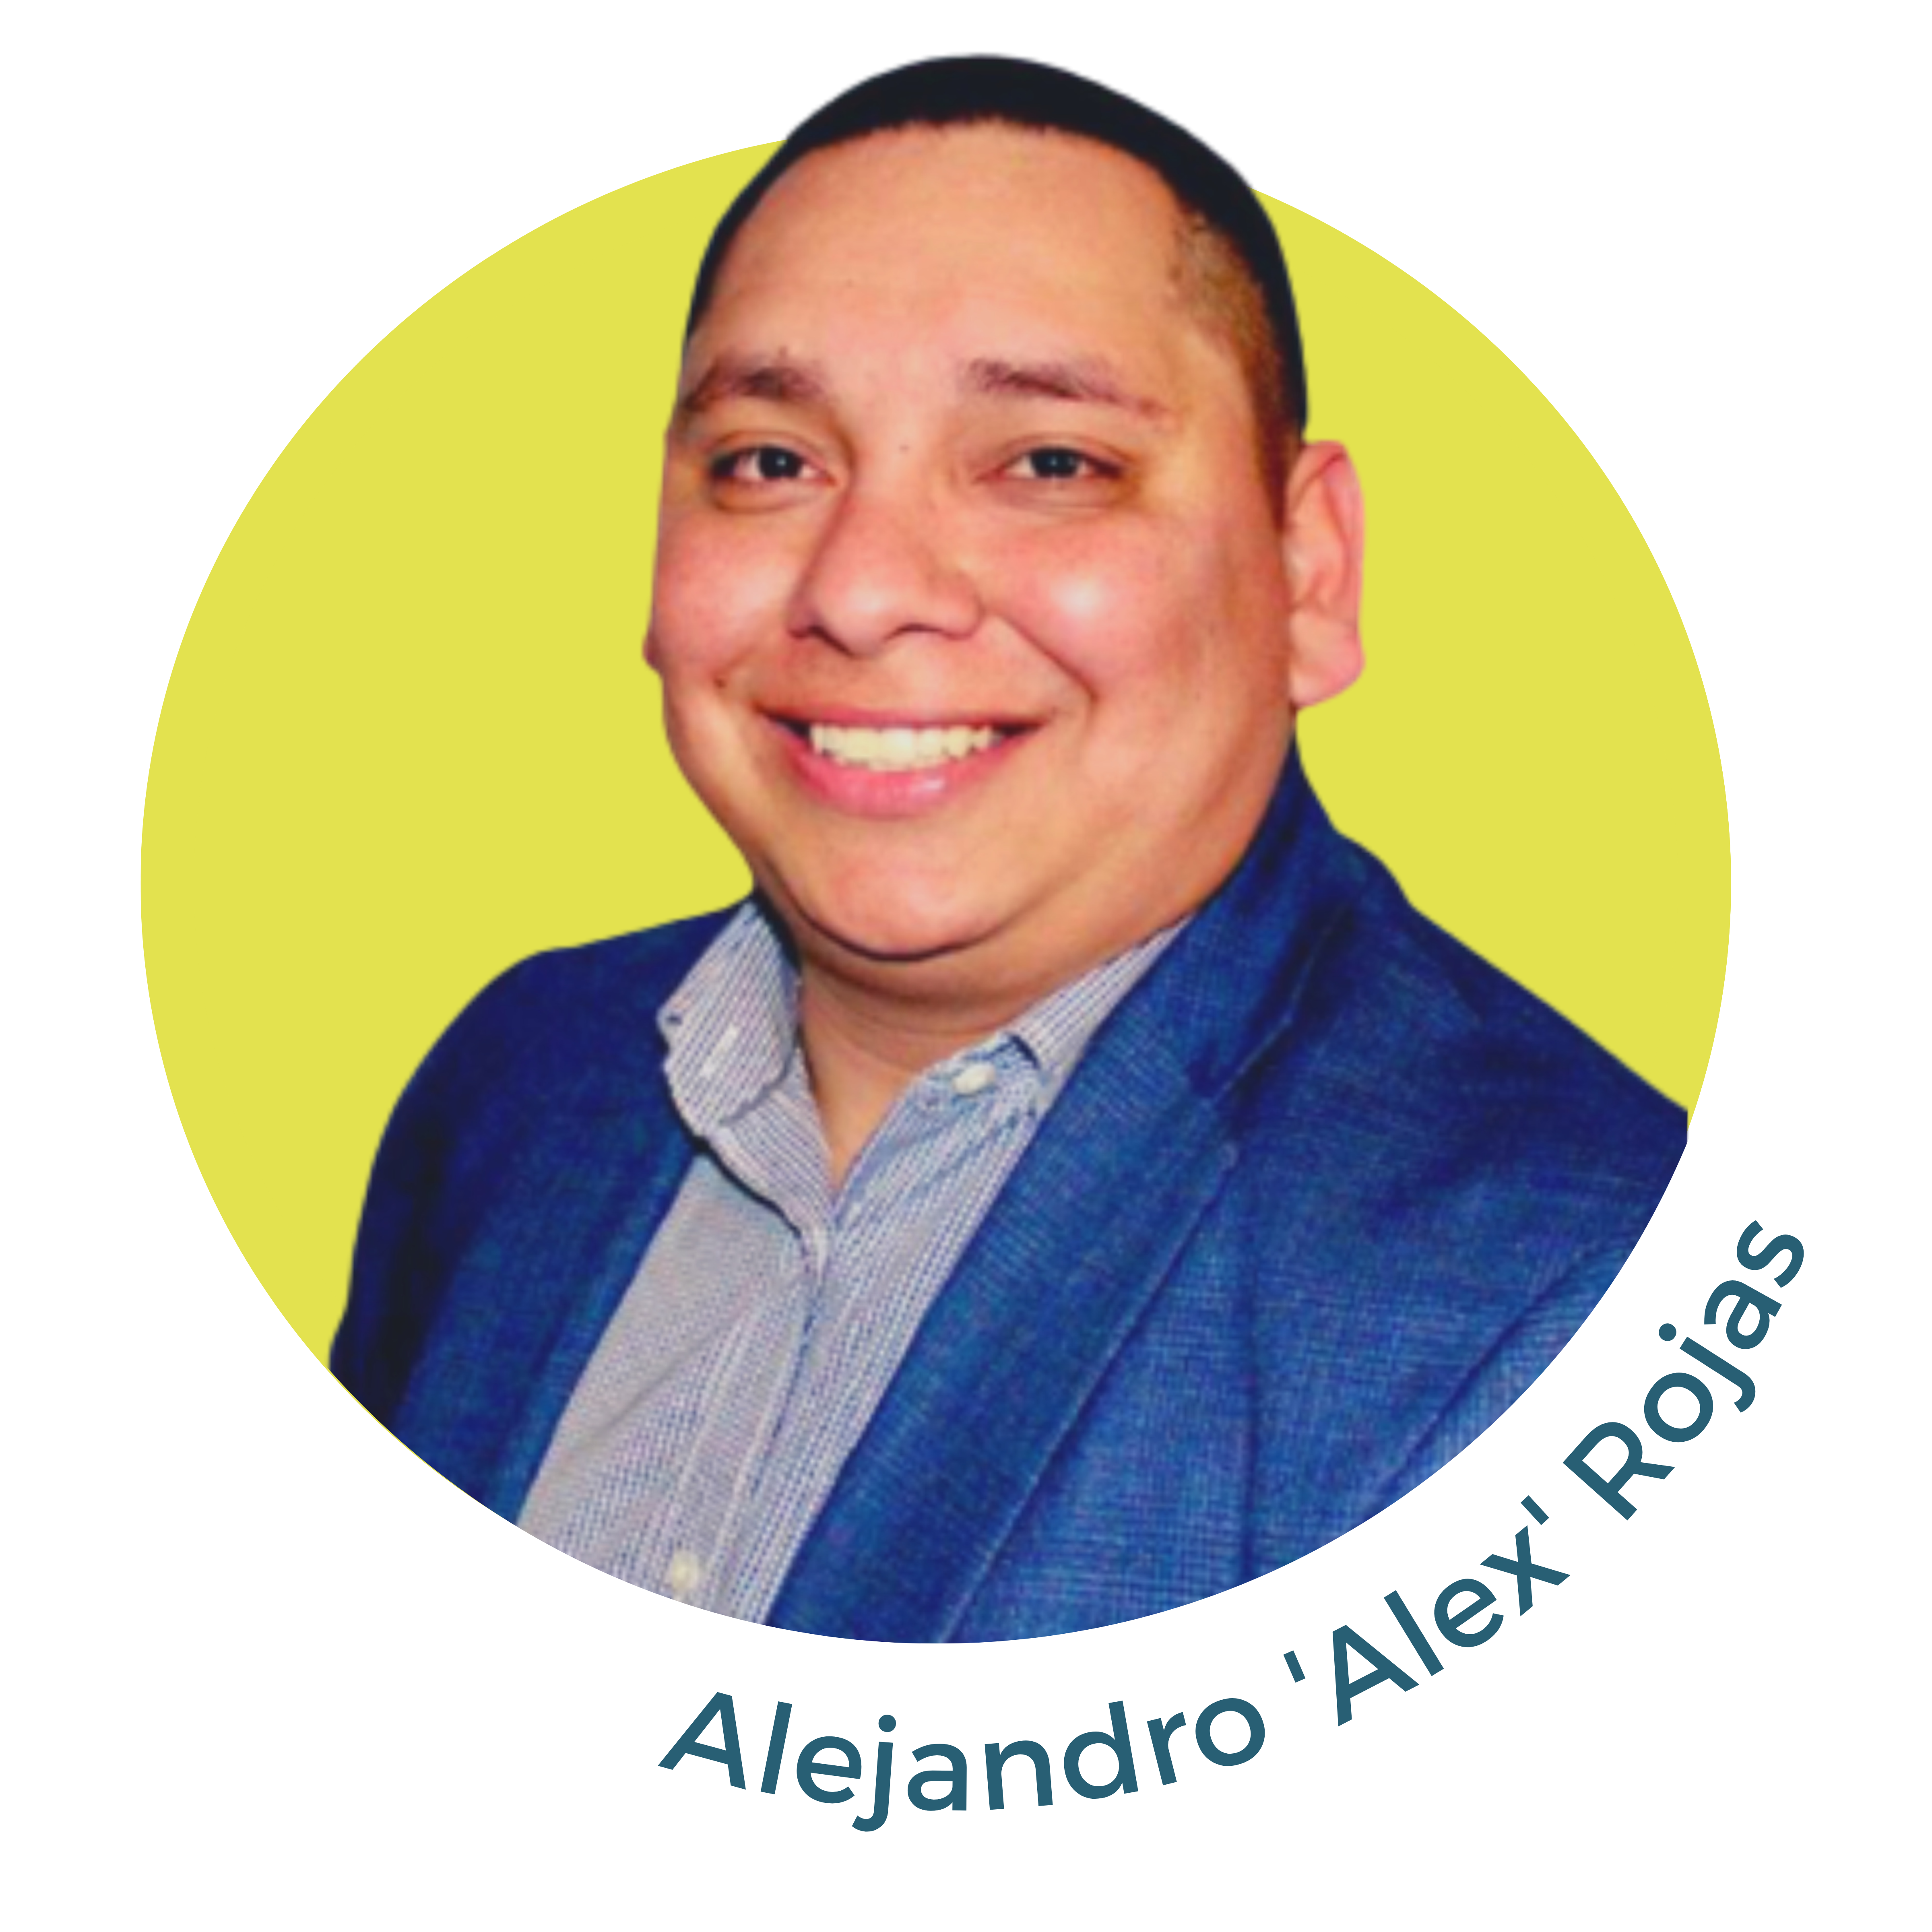 Alejandro 'Alex' Rojas